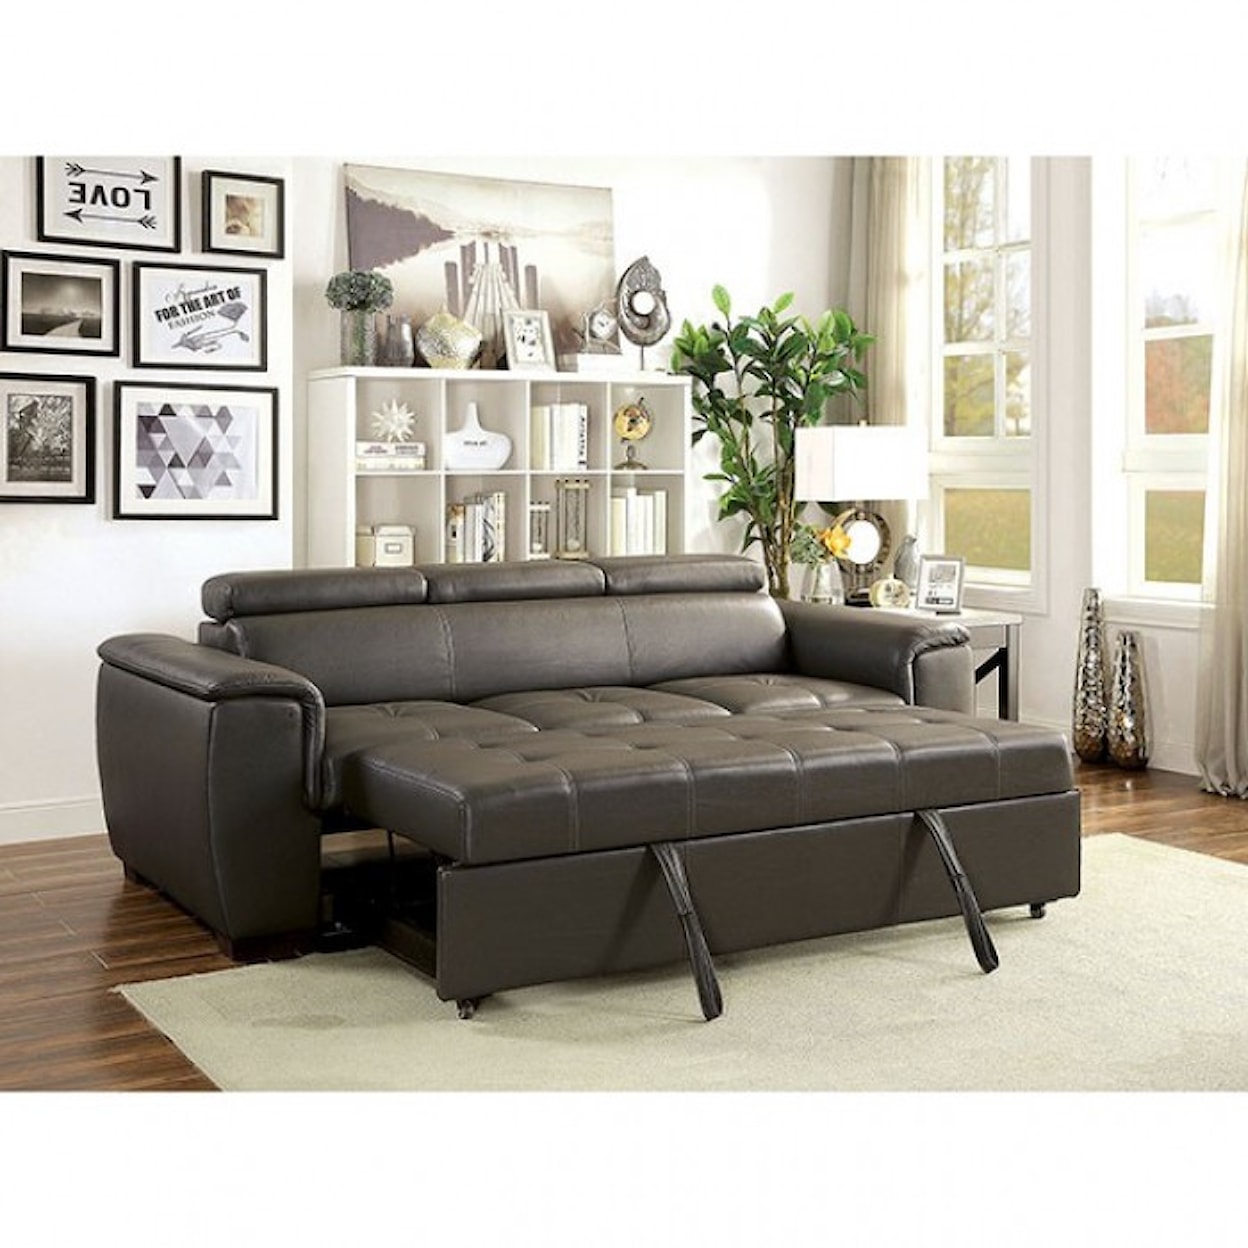 Furniture of America Holywell Sleeper Sofa